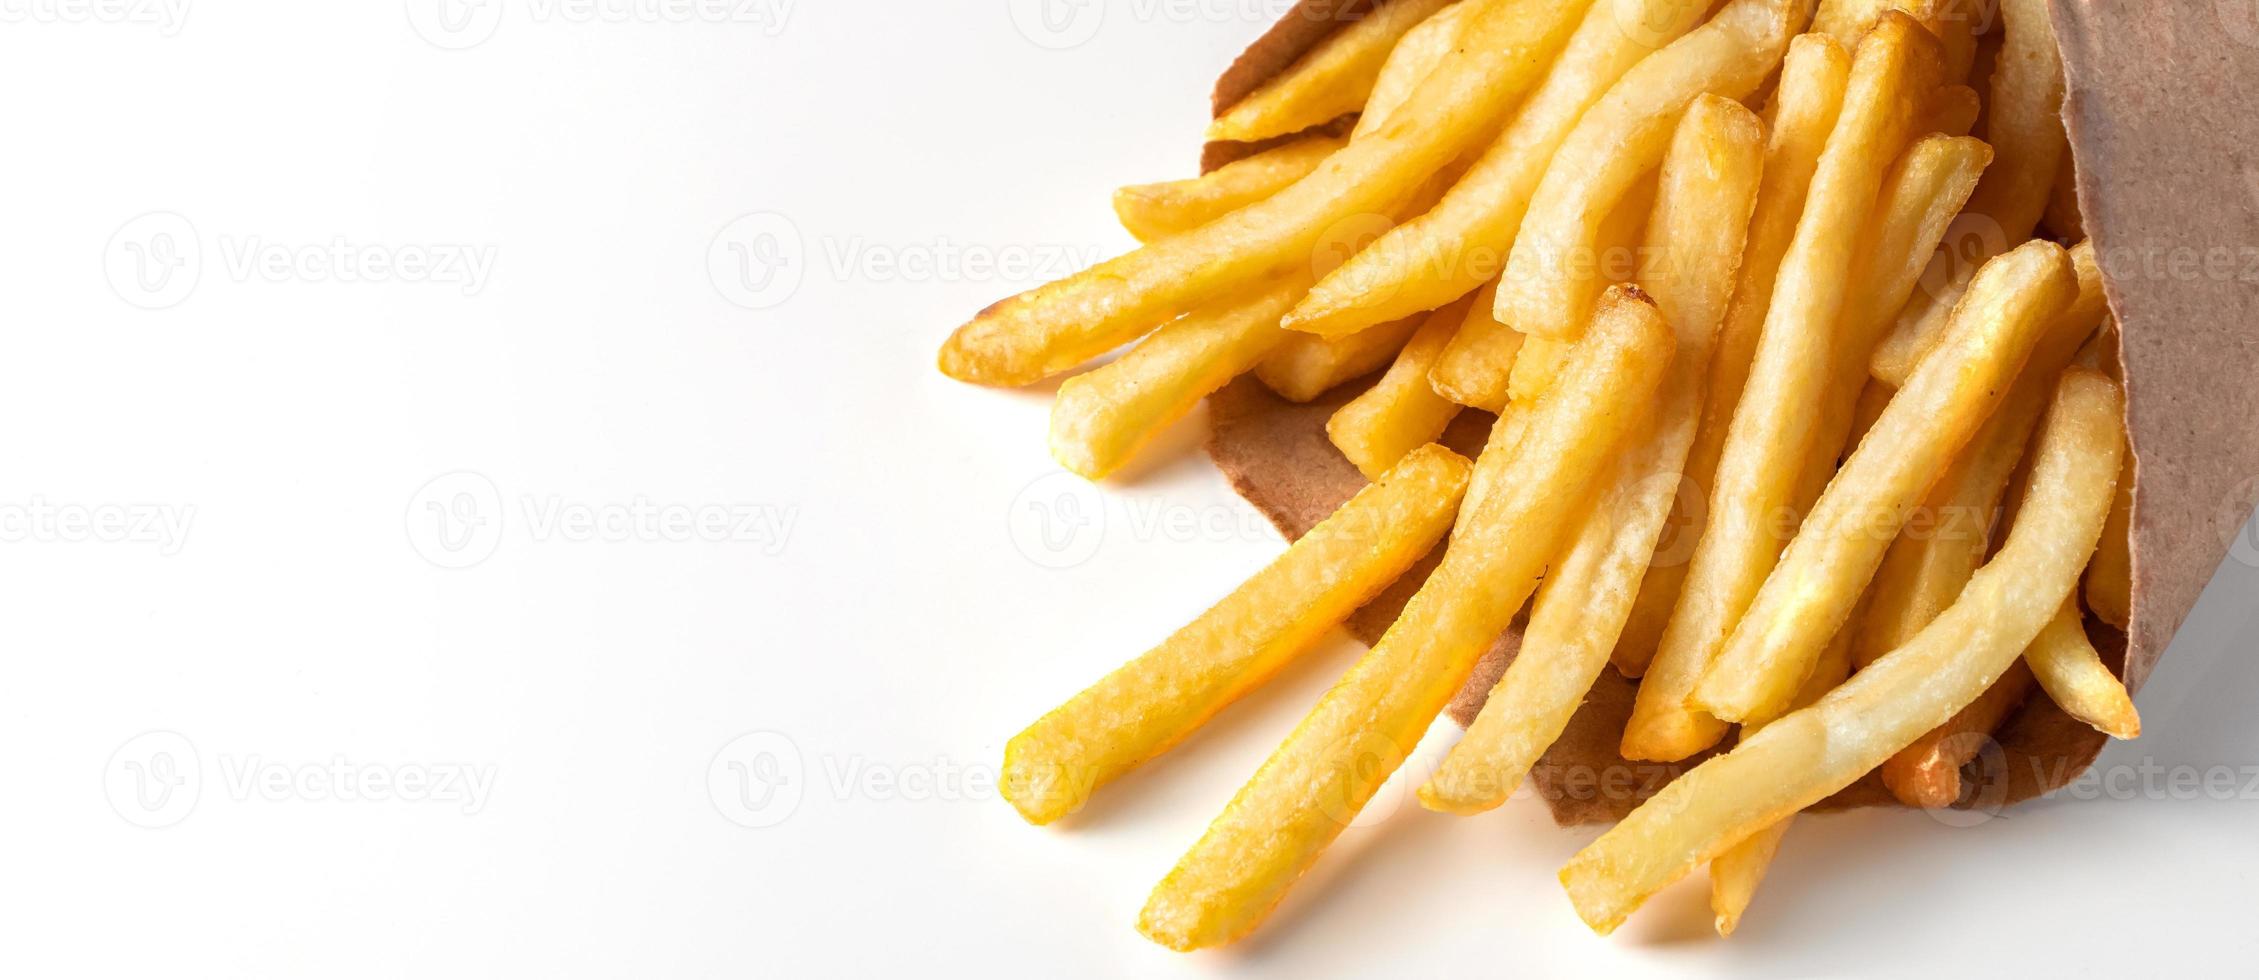 aptitretande pommes frites på vit bakgrund. varm snabbmat. plats för text. foto